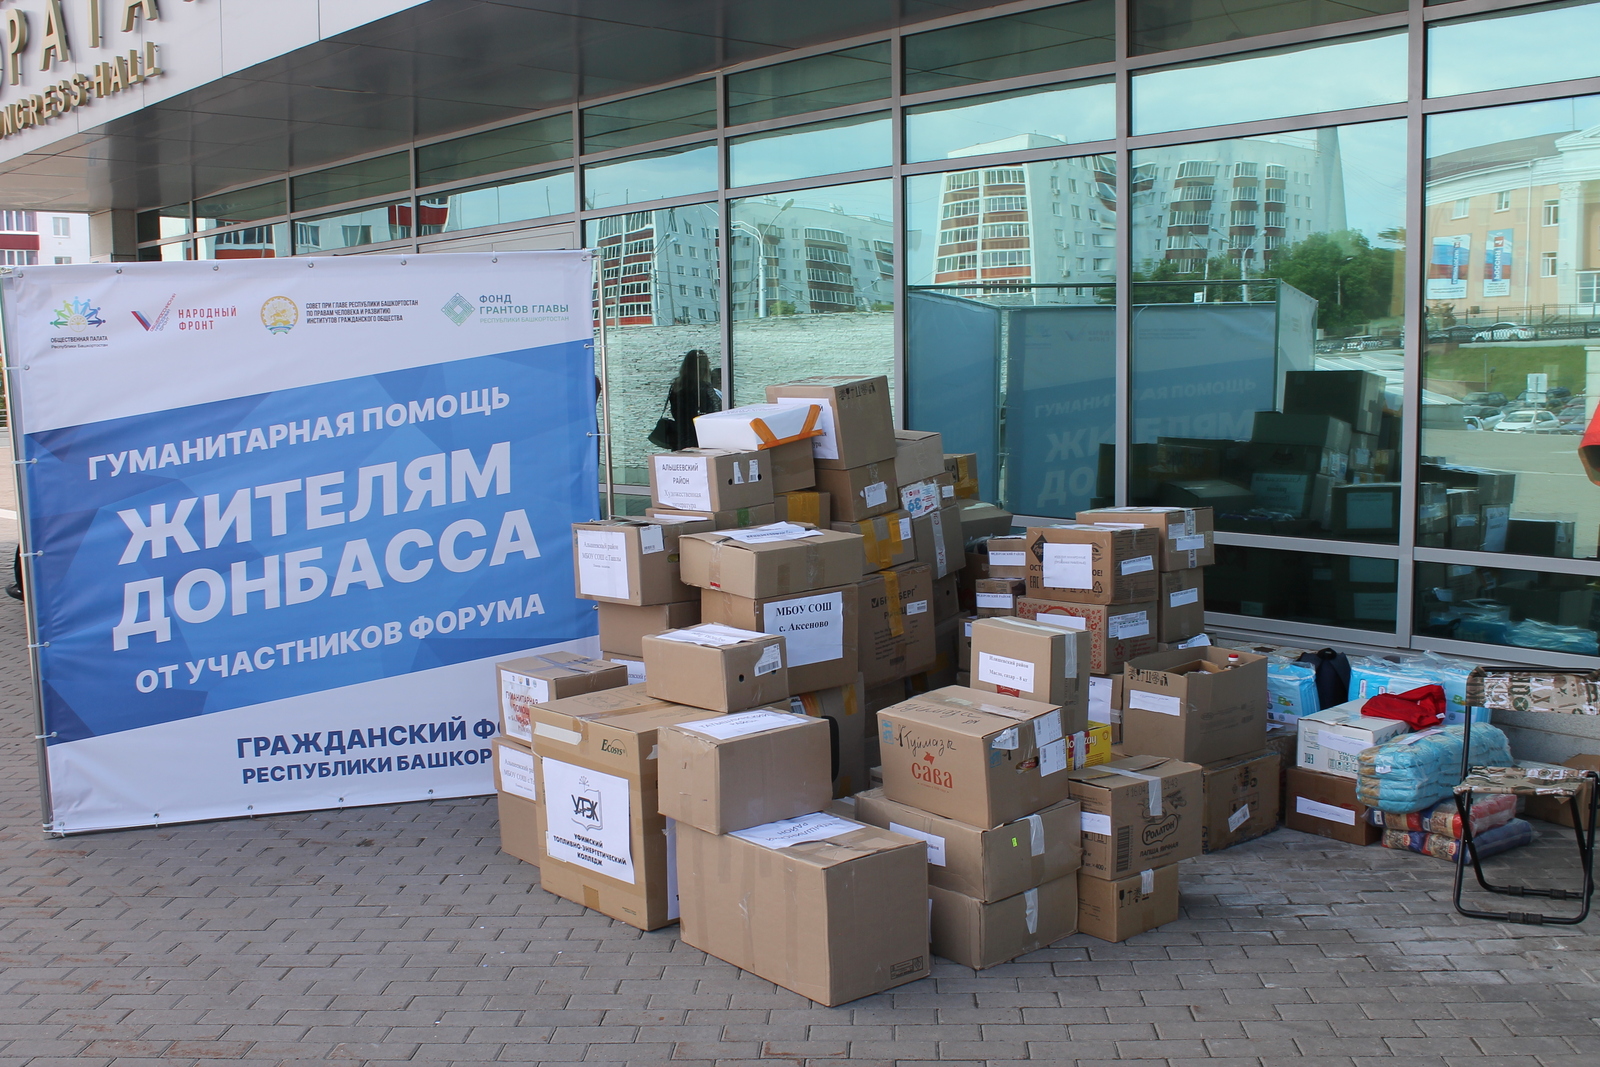 В ходе Гражданского форума состоялся сбор гуманитарной помощи жителям Донбасса